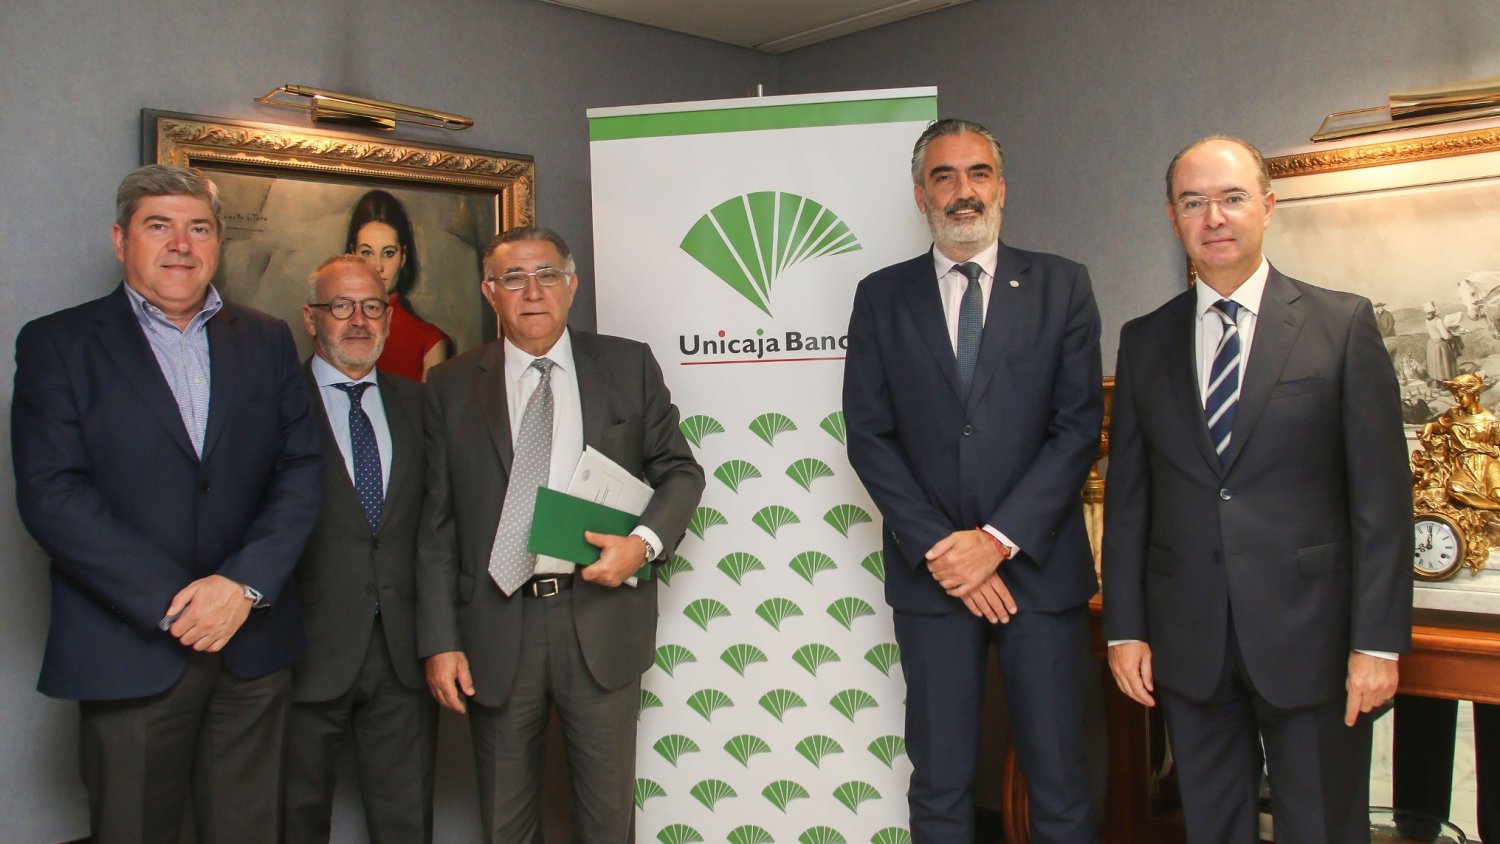 Unicaja Banco renueva su apoyo al sector turístico mediante acuerdos con tres asociaciones empresariales